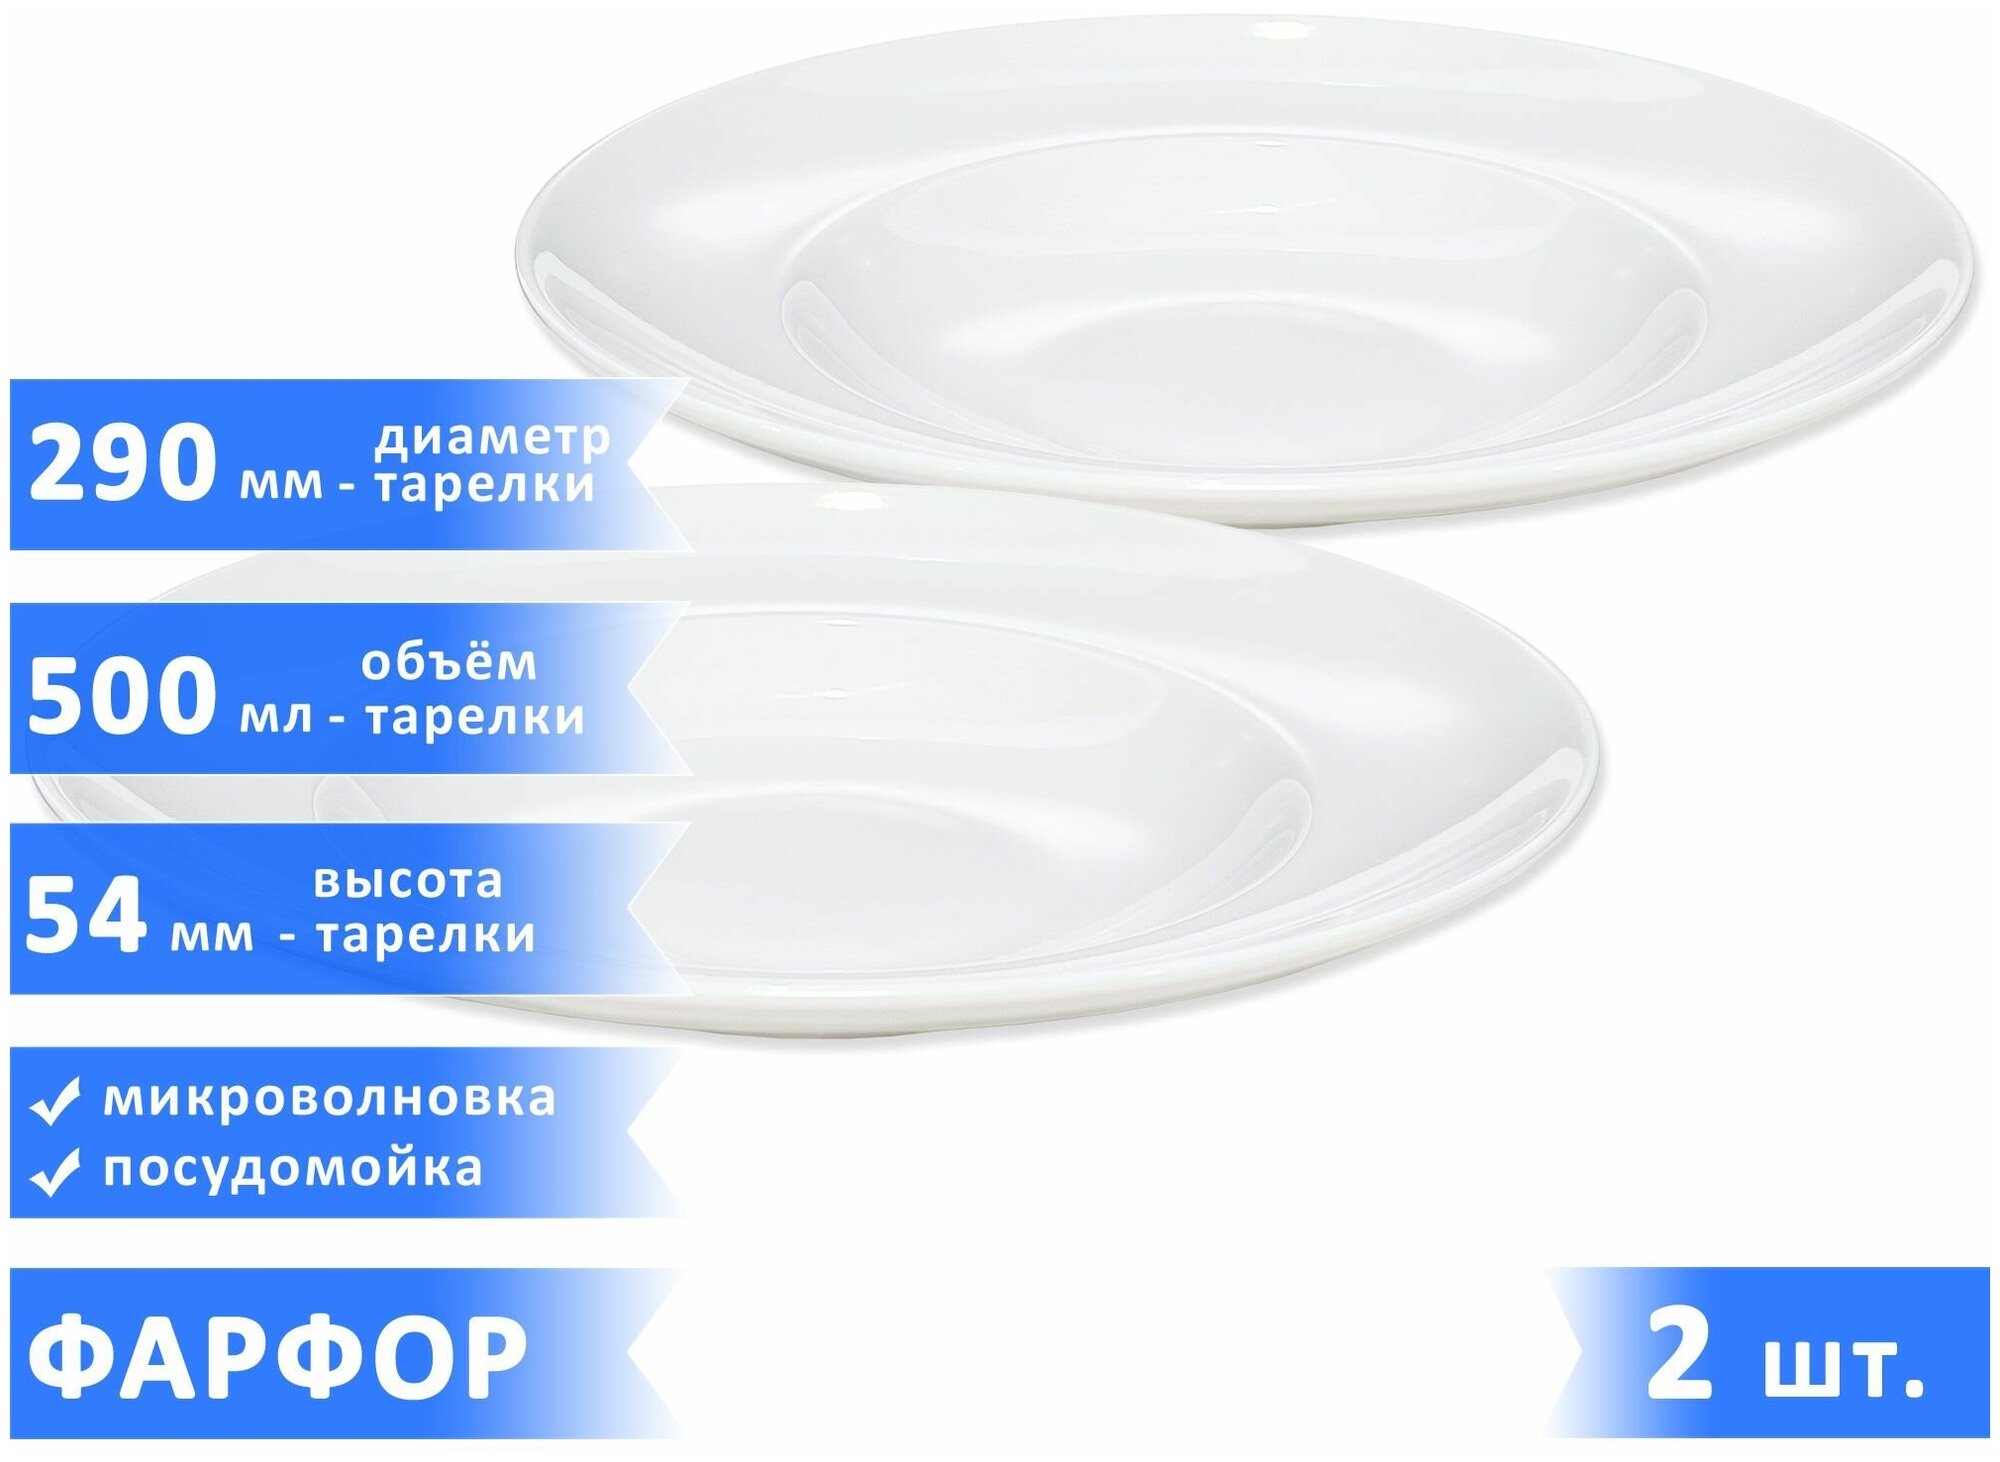 Набор глубоких тарелок для пасты "Тренд", фарфор, 500 мл, диаметр 29 см, высота 54 мм, белые, 2 шт.